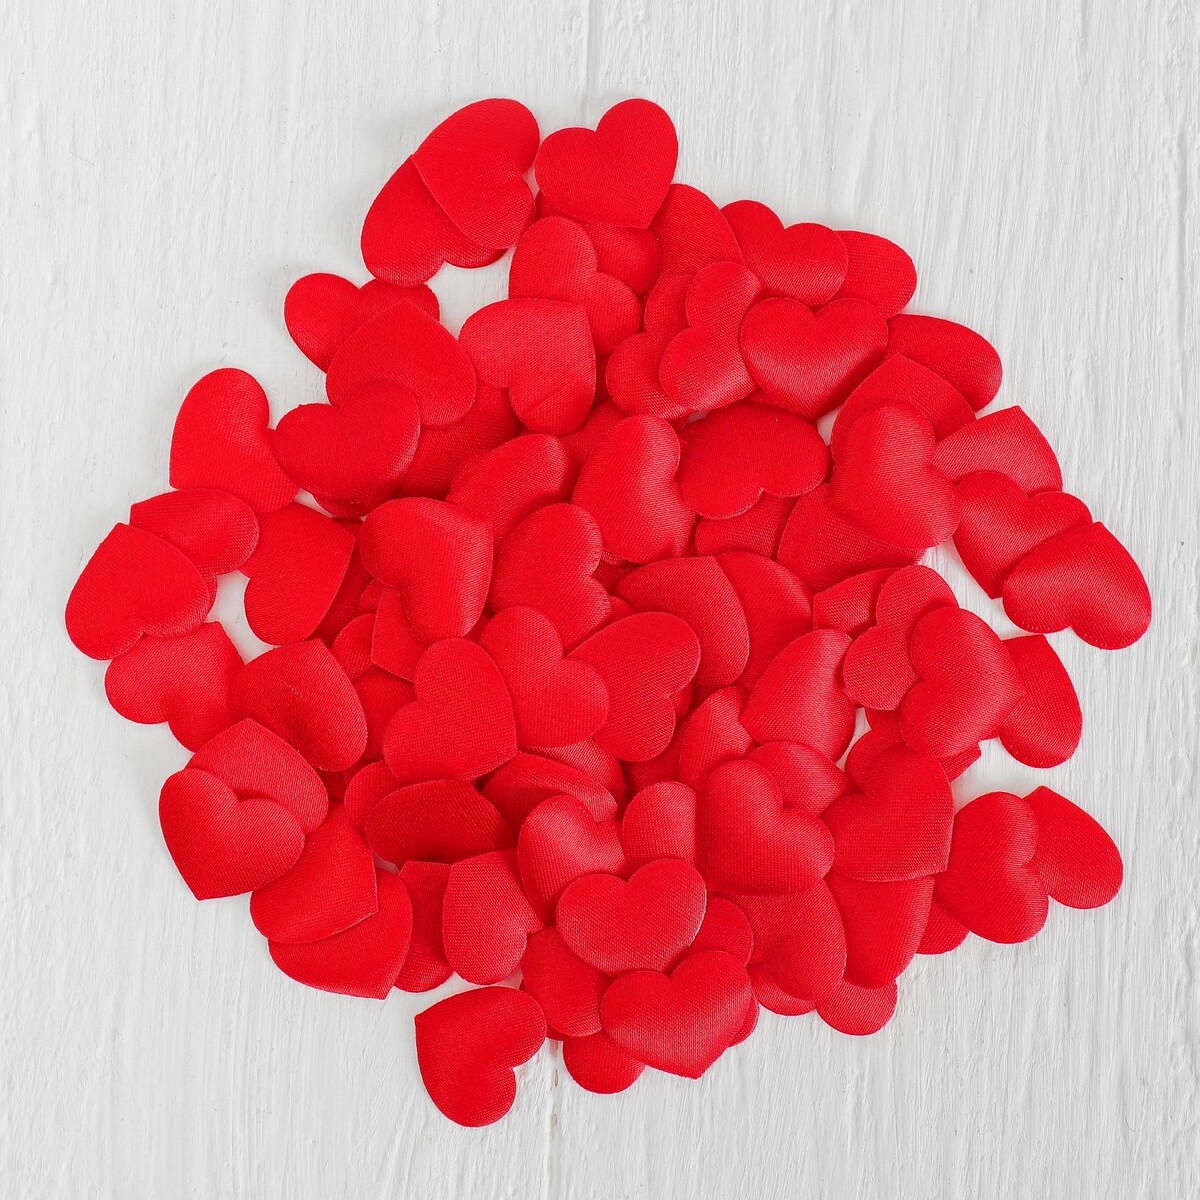 Сердечки декоративные, набор 100 шт., 2 см, цвет красный эмпрана подарок впечатление сны джульетты